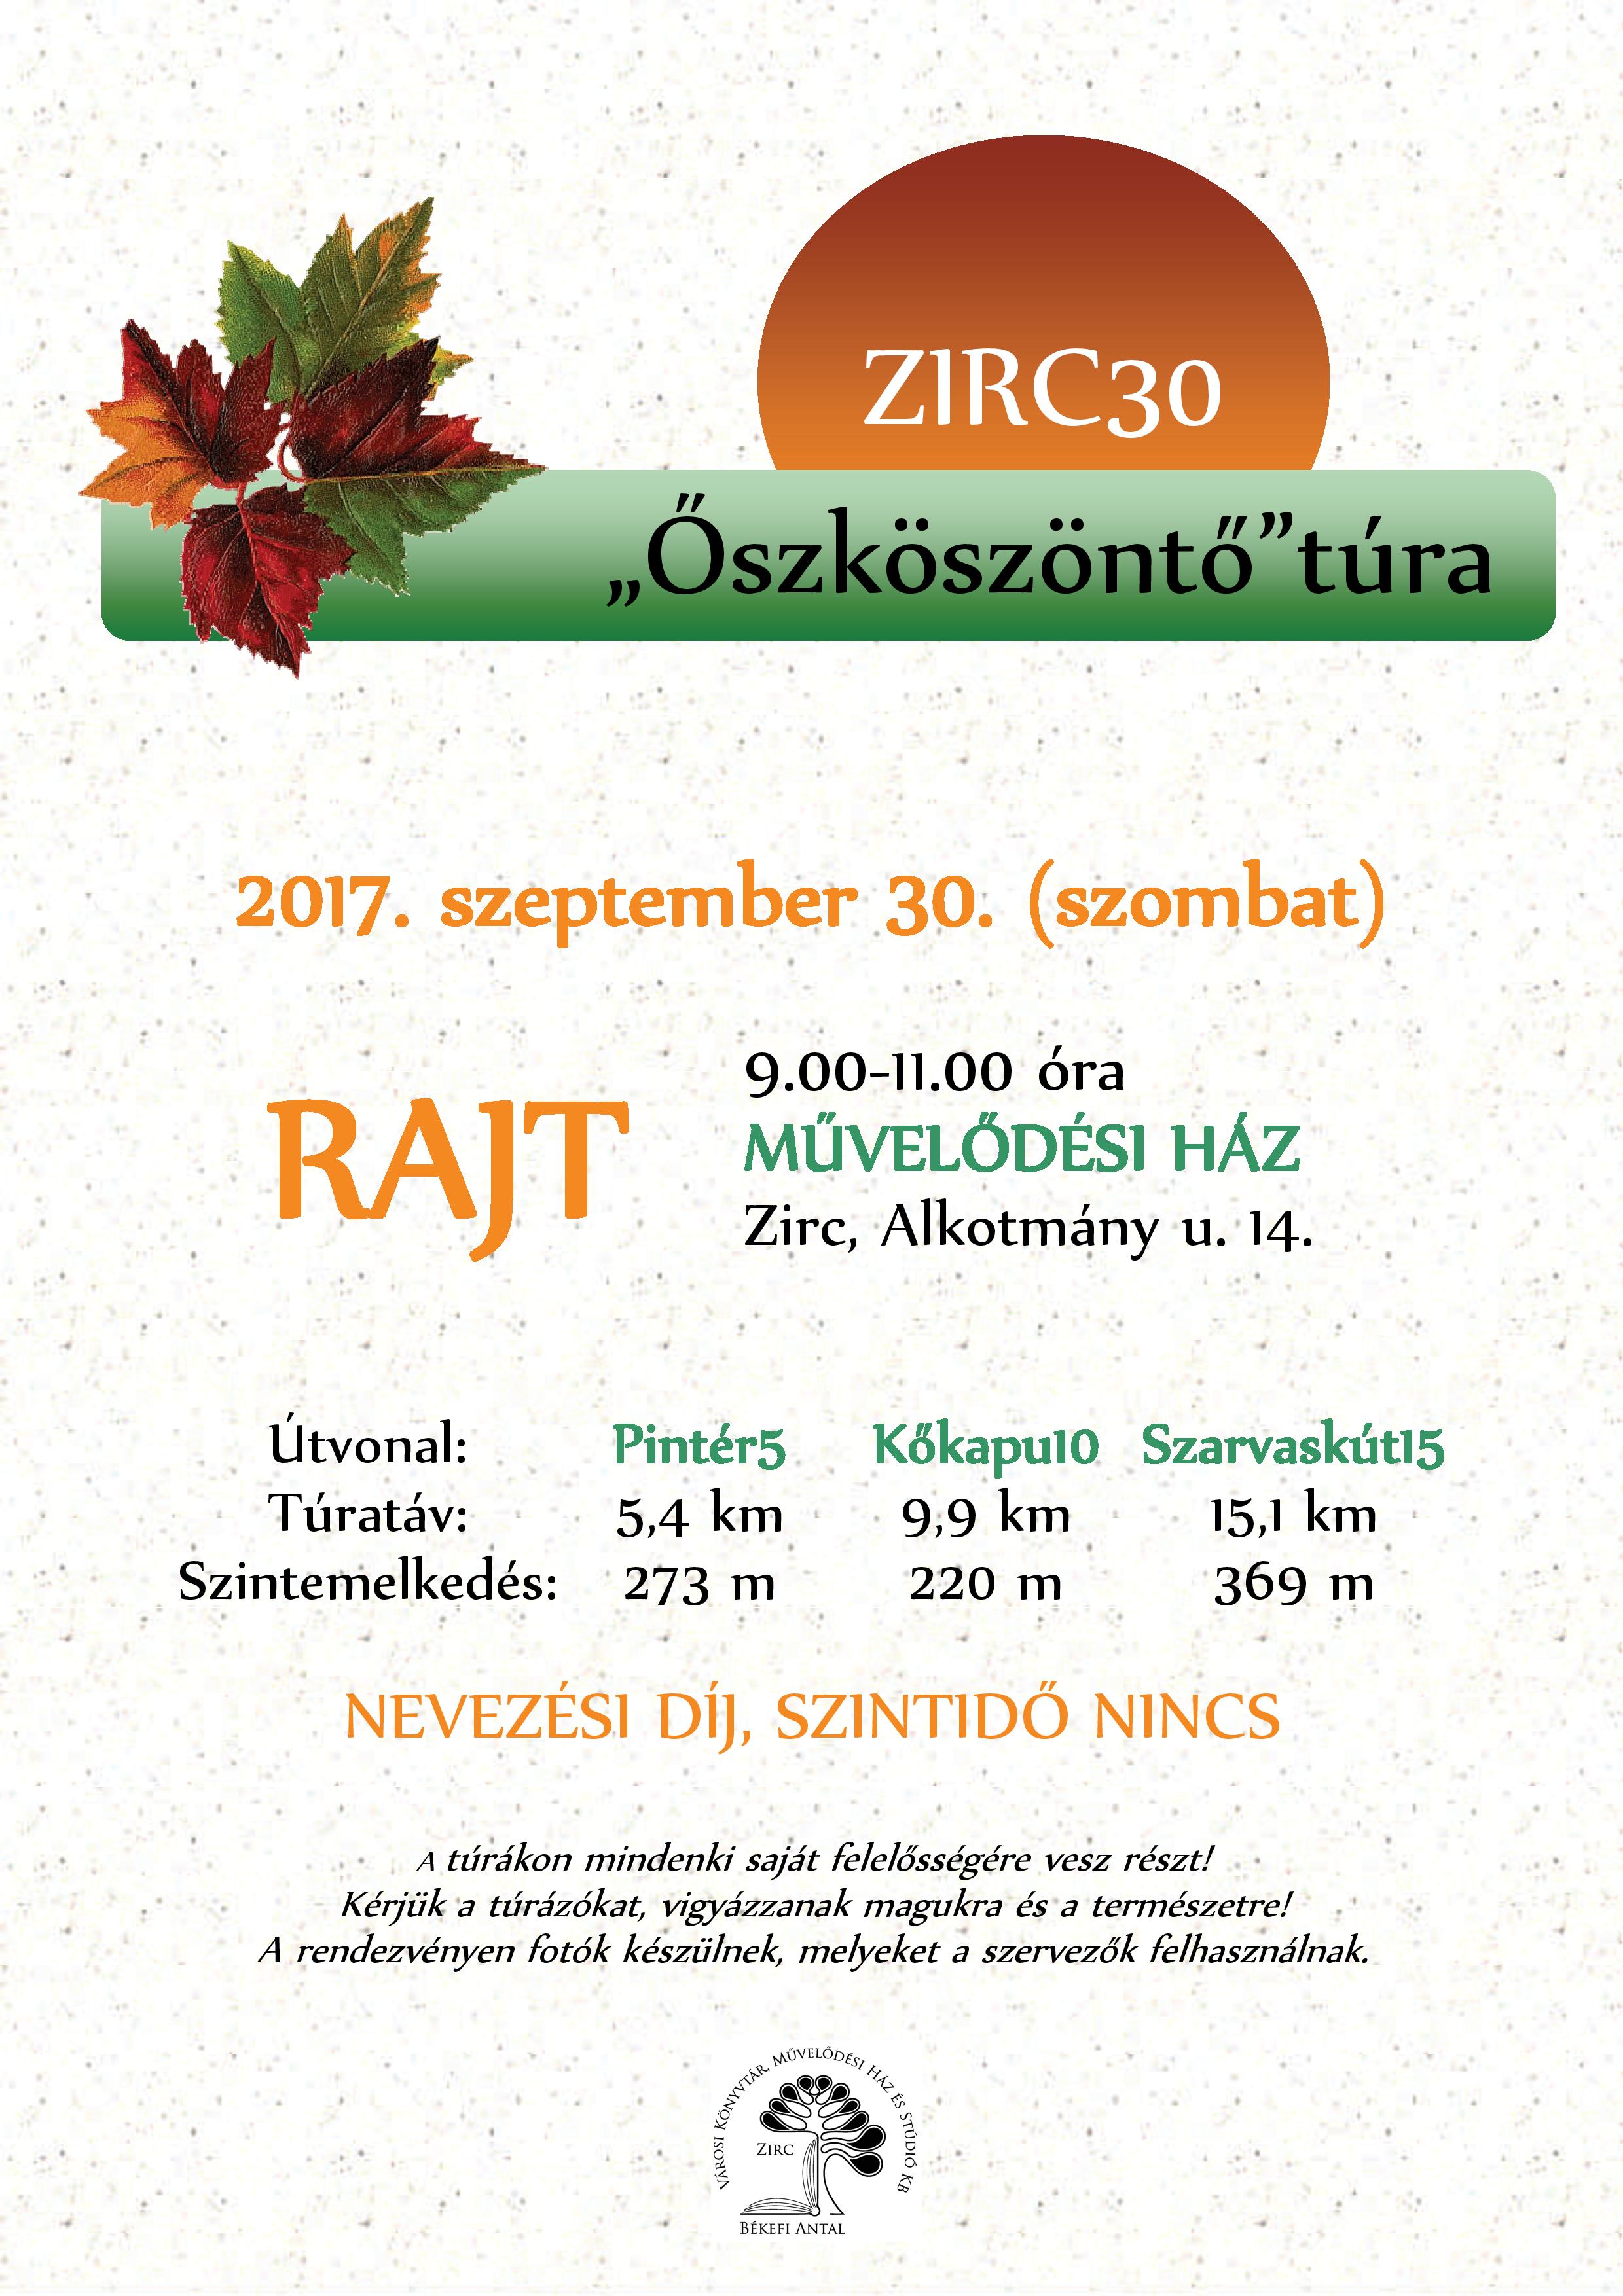 2017-09-30_zirc30_oszkoszonto_tura.jpg